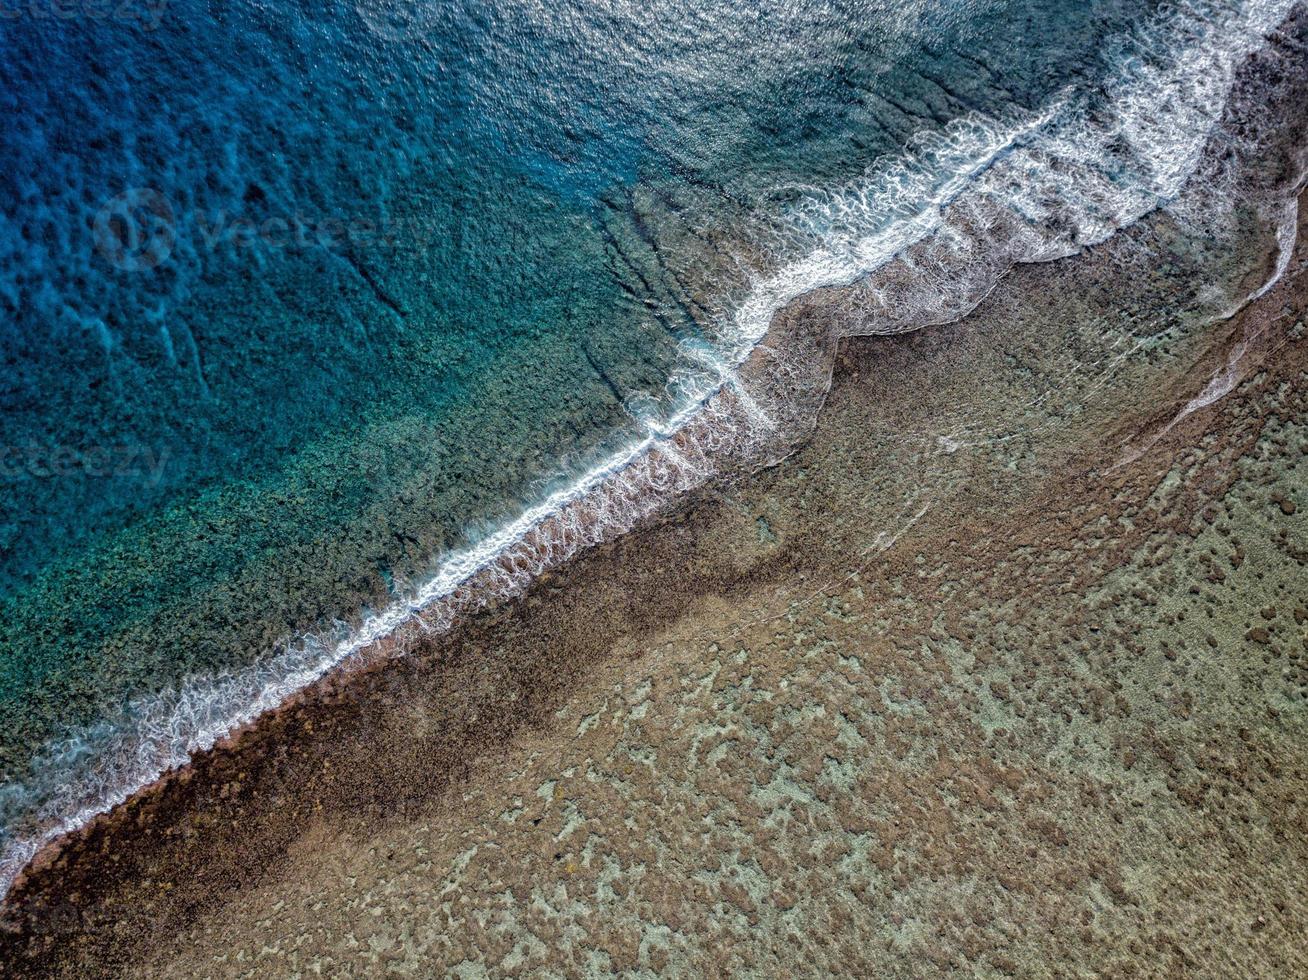 vista aérea de las olas en el arrecife de las islas cook de polinesia foto